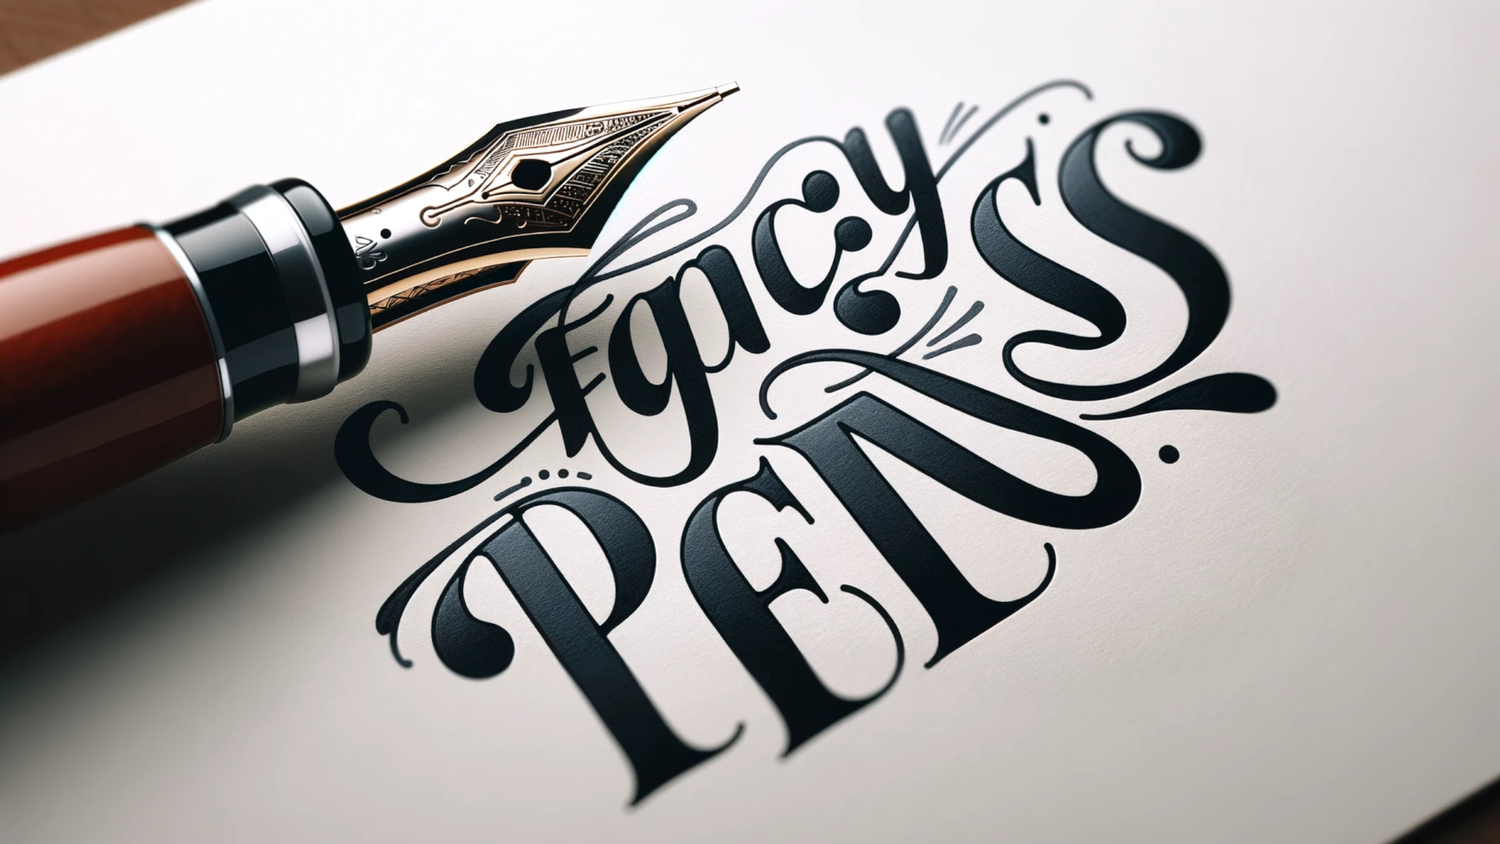 Fancy Pens by Pitchman